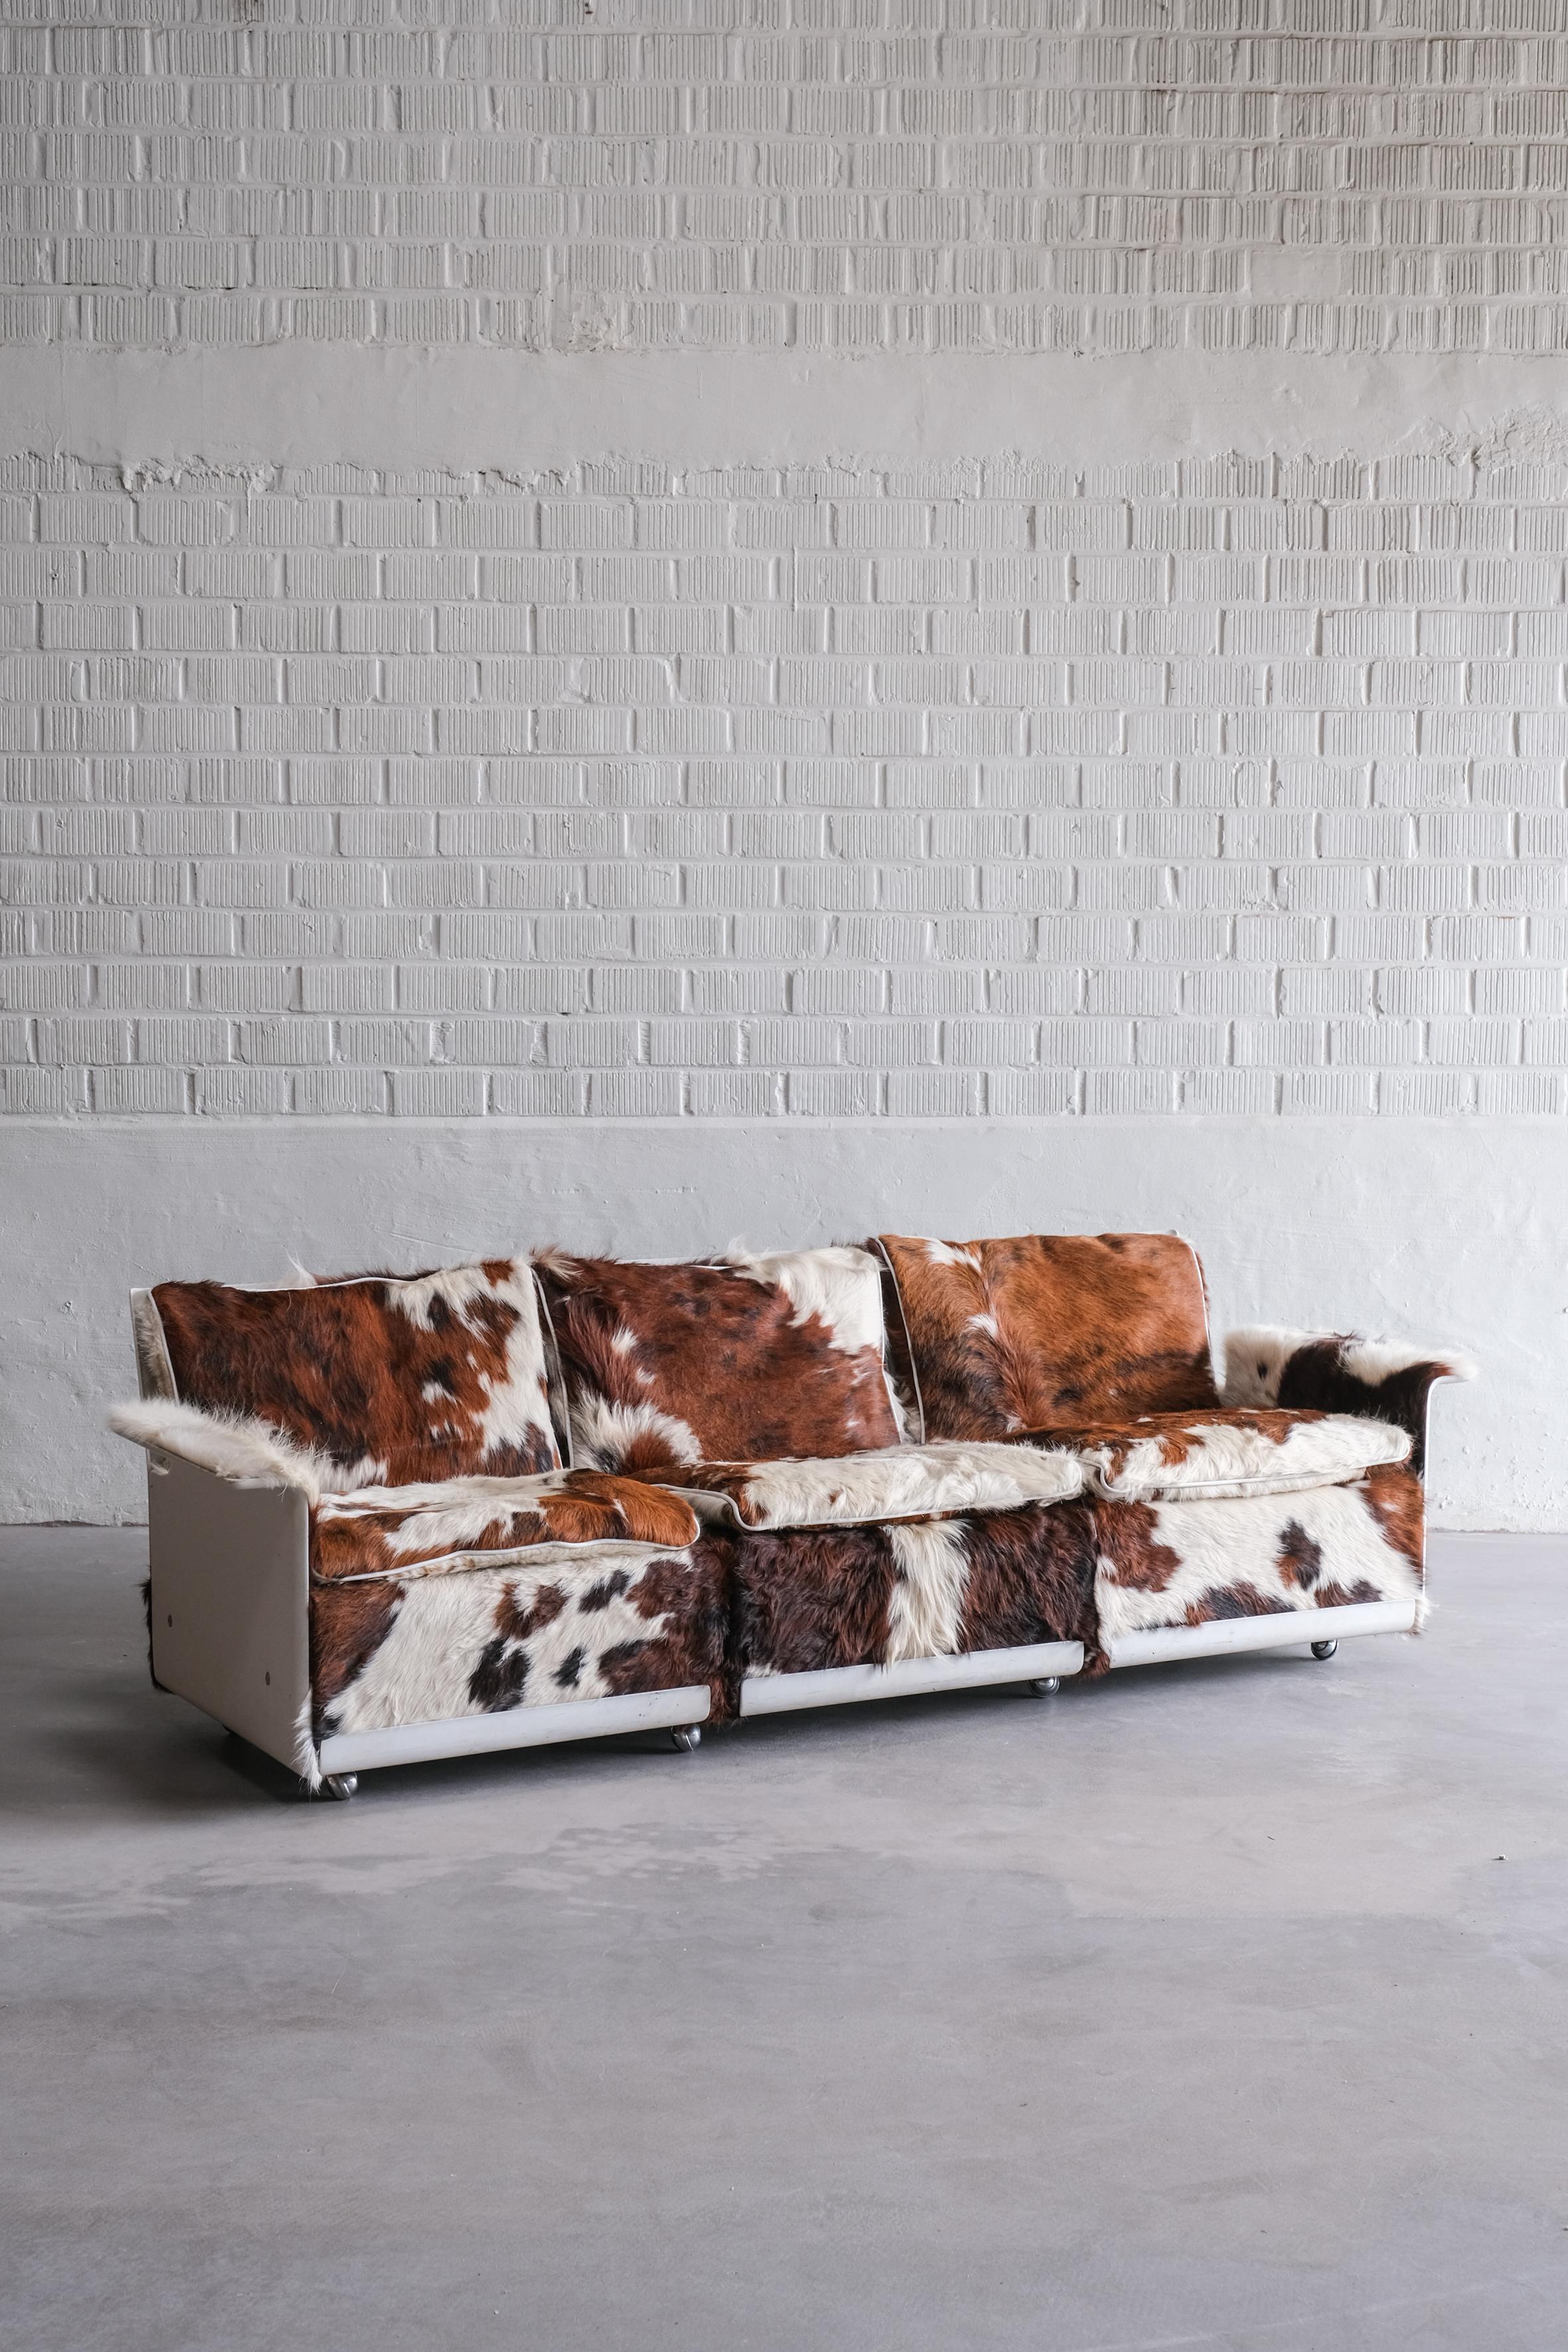 Erstaunliches Loungesofa von Dieter Rams, gepolstert mit Kuhhäuten. 
Dieses Sofa ist in sehr gutem Zustand. 